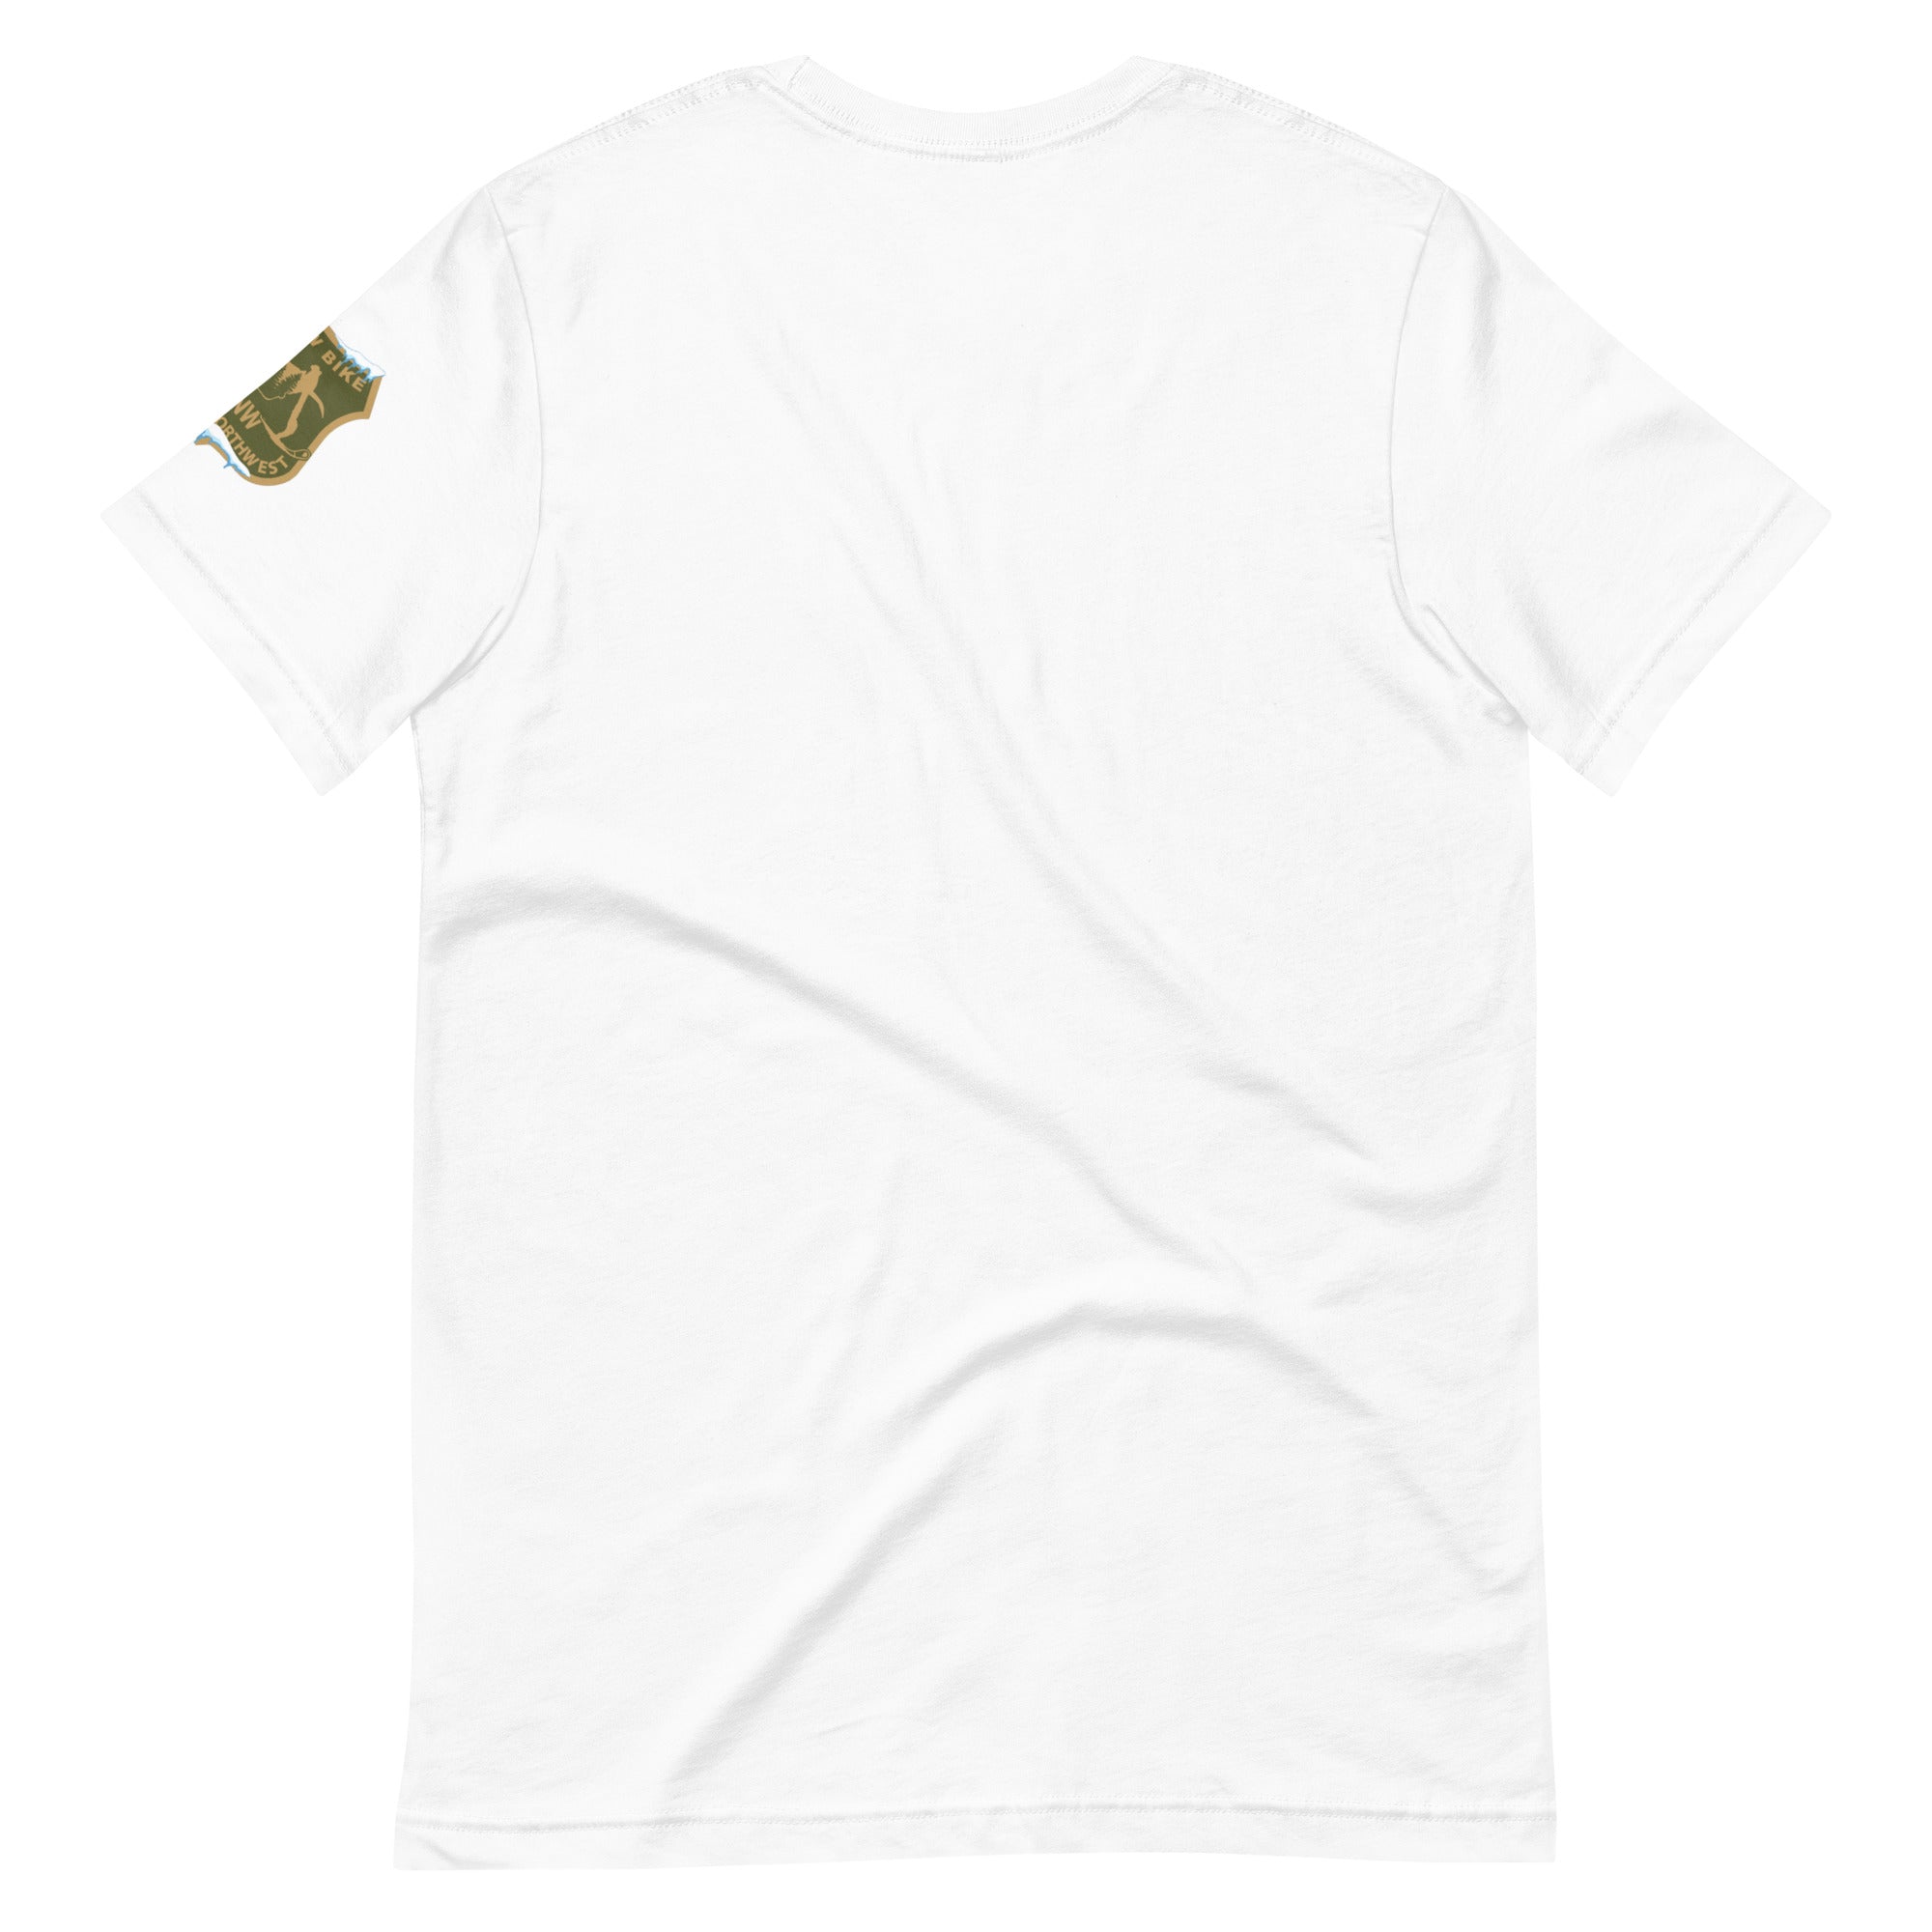 SnowBike Shirt, Premium, Black